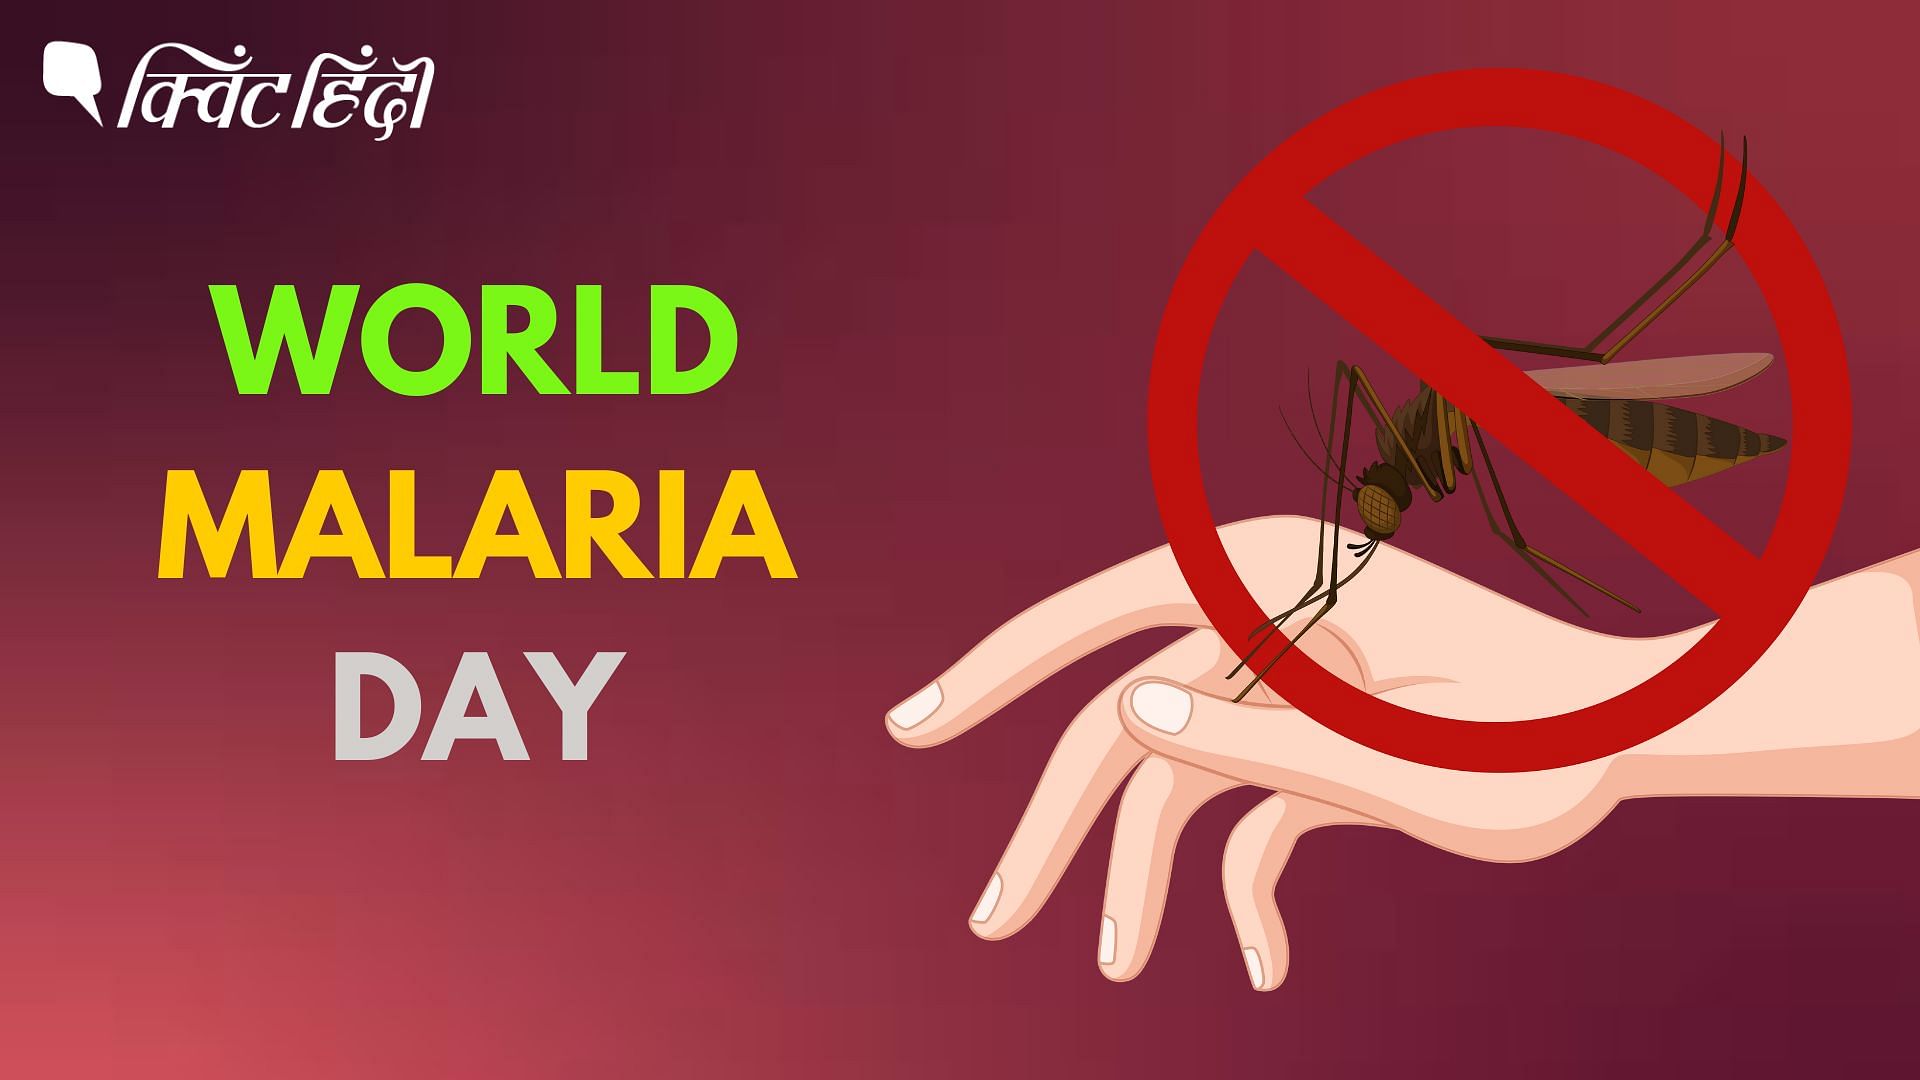 <div class="paragraphs"><p>World Malaria Day</p></div>